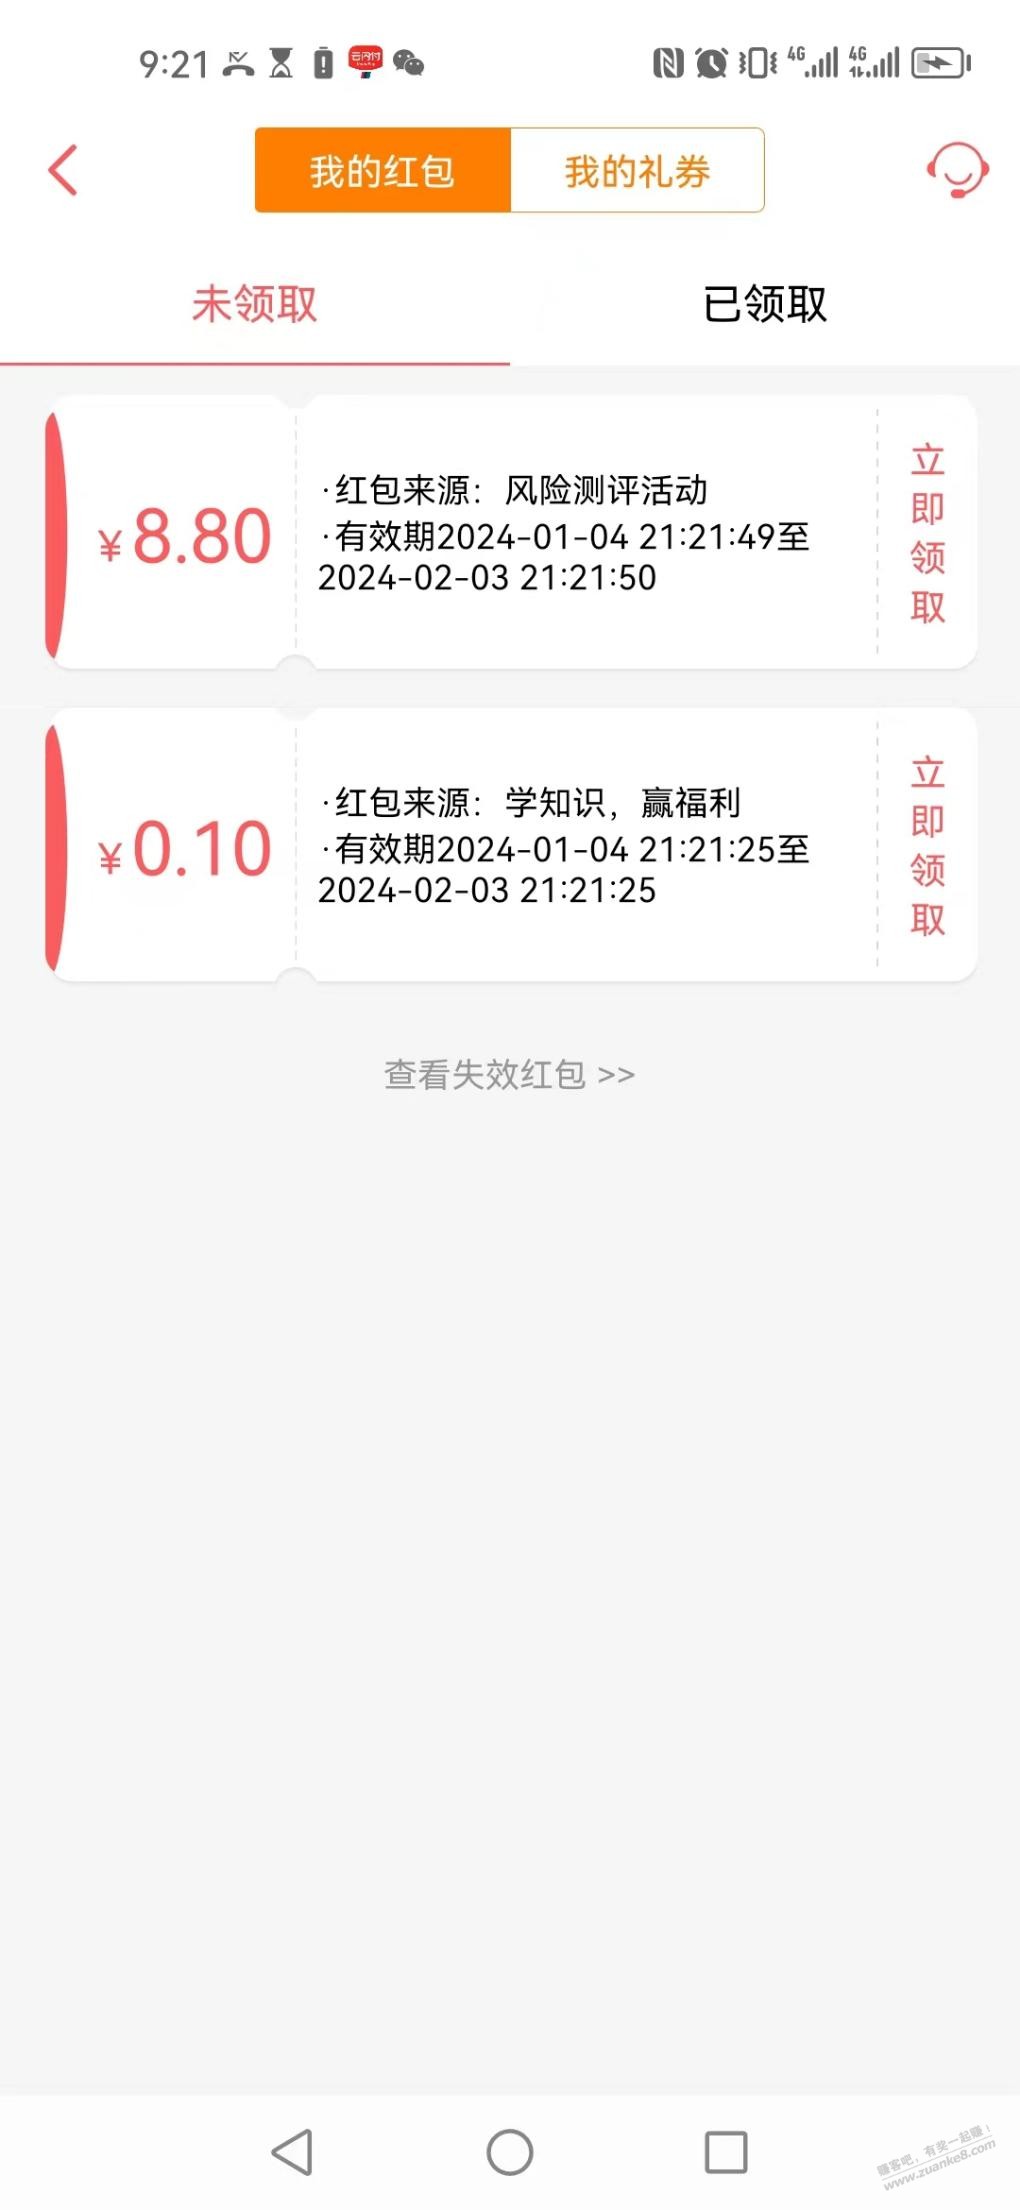 现金宝app现金红包-惠小助(52huixz.com)